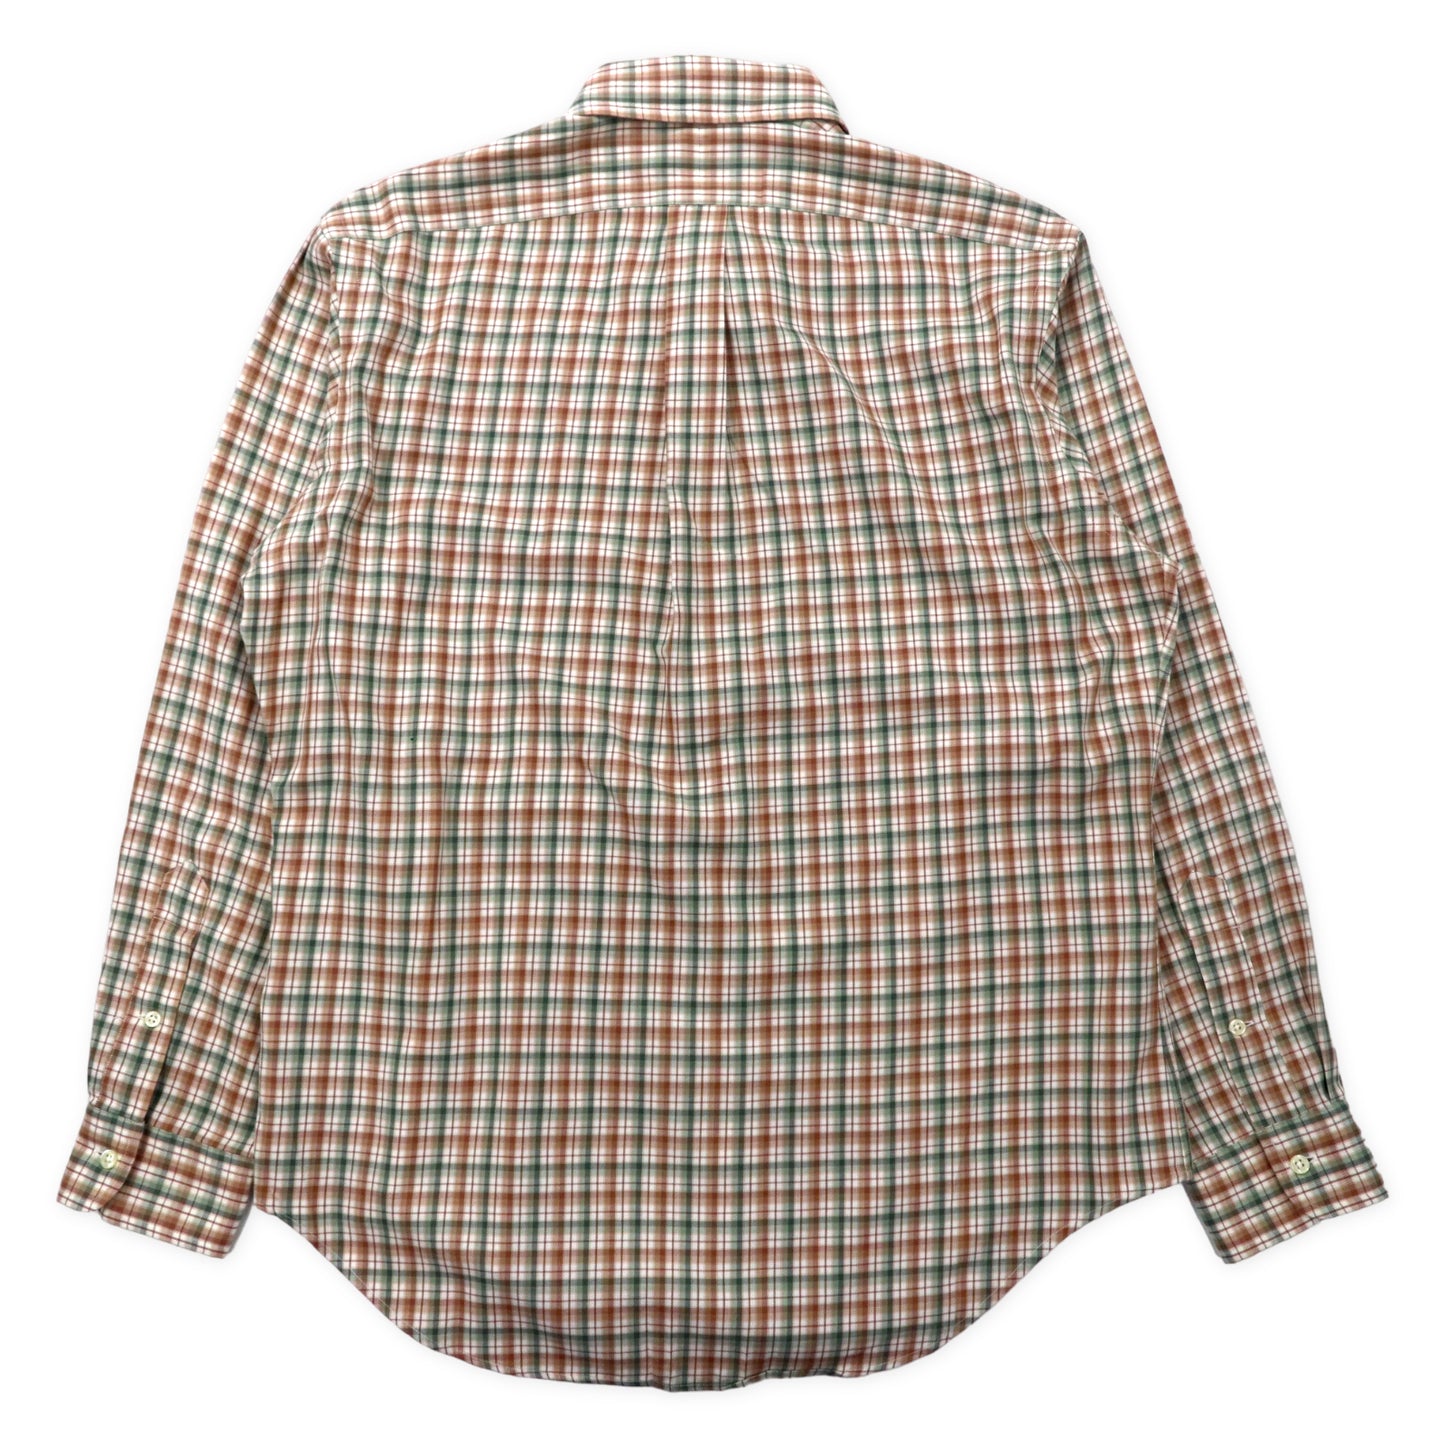 Ralph Lauren ボタンダウンシャツ L ベージュ チェック コットン CLASSIC FIT スモールポニー刺繍